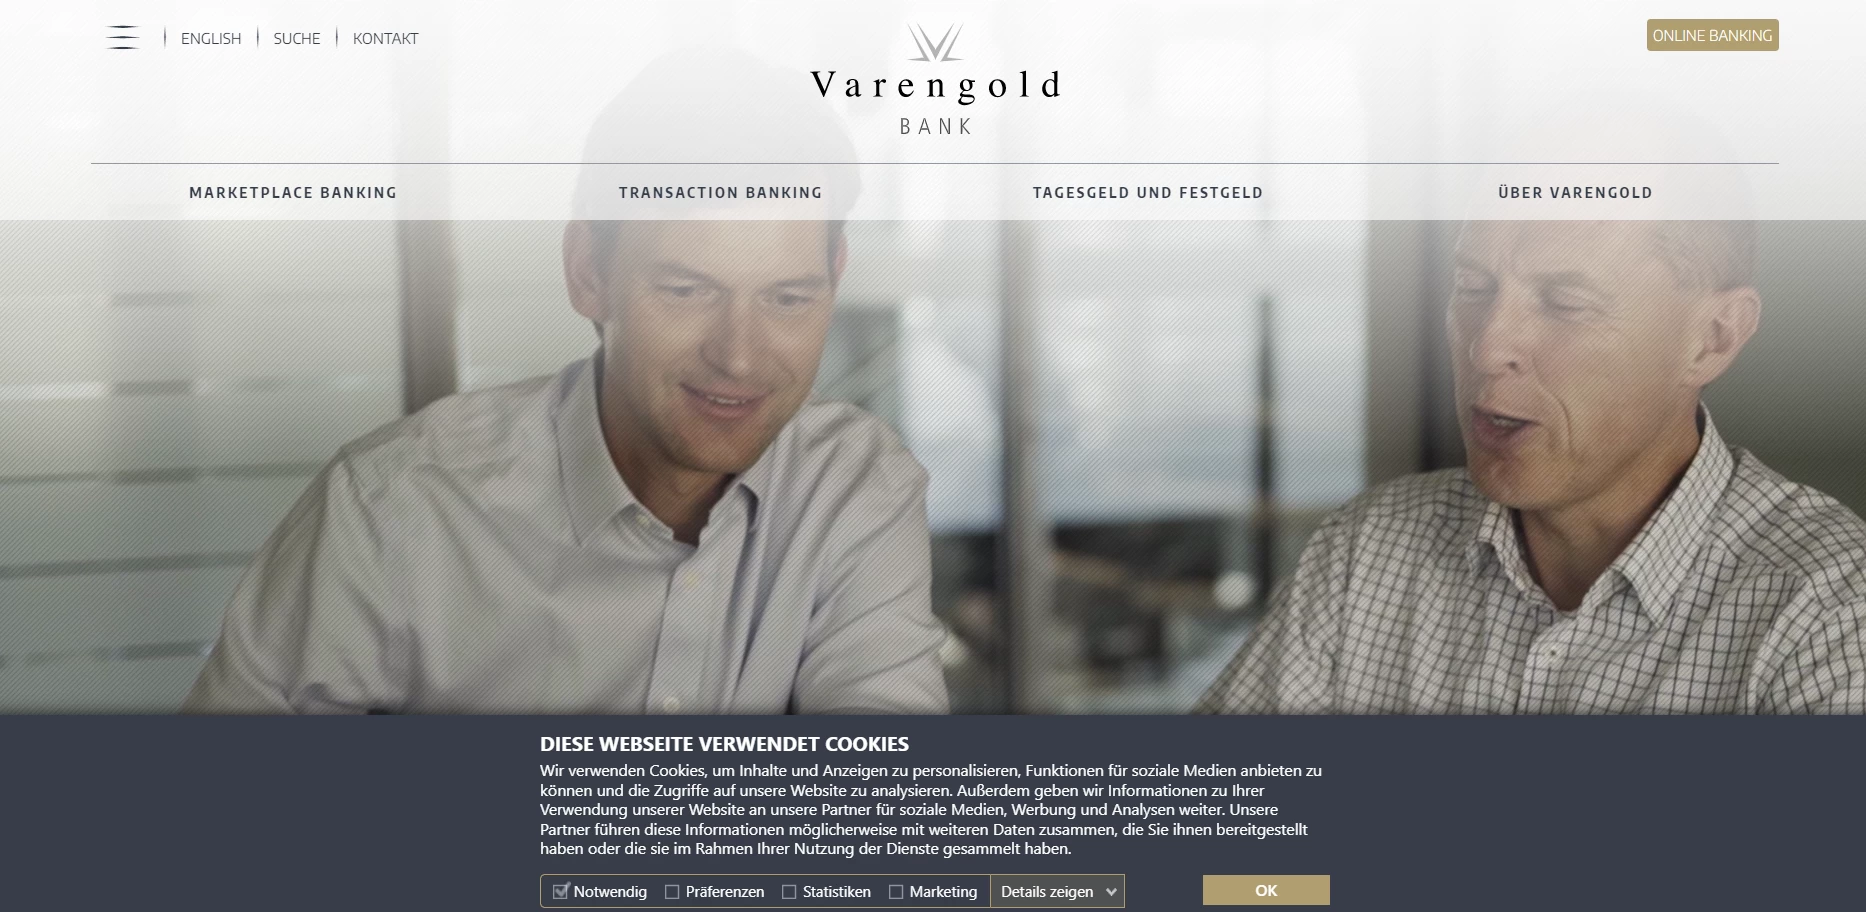 Varengold Bank на самом деле существует и имеет хорошую репутацию